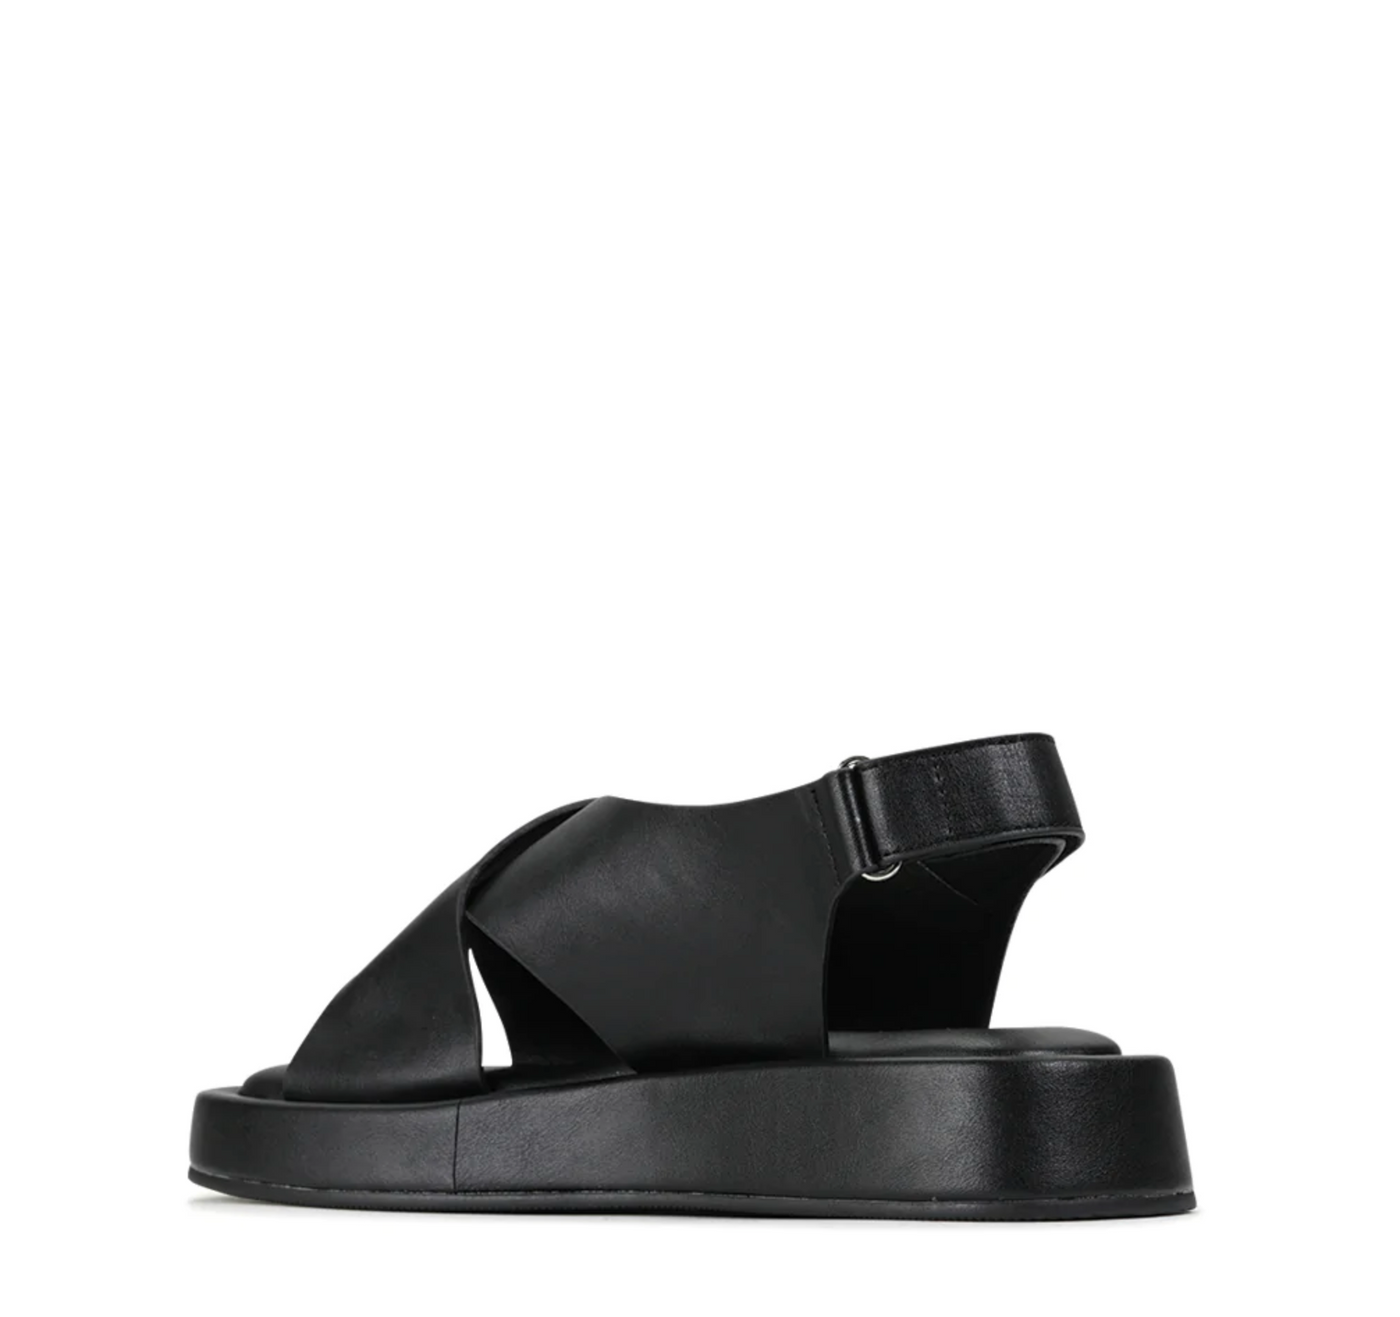 LOS CABOS MODI BLACK - Women Sandals - Collective Shoes 